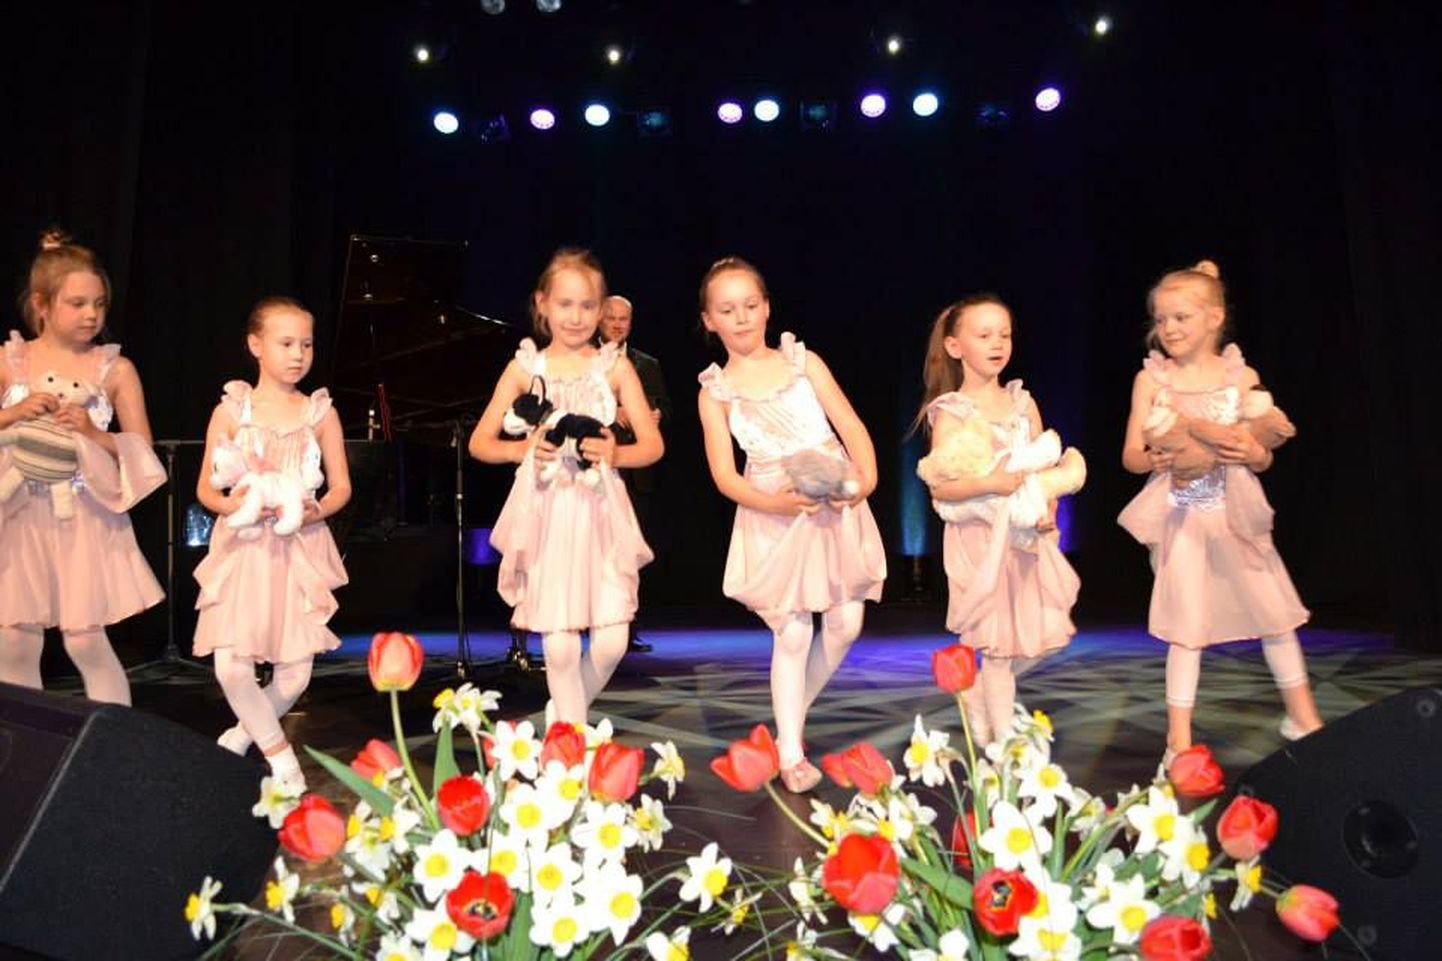 Möödunud aastal Sakala keskuses korraldatud heategevusliku emadepäeva kontserdi «Kingi emale üks vaba päev» tulusid kasutati puudega last kasvatavate emade rõõmuks.